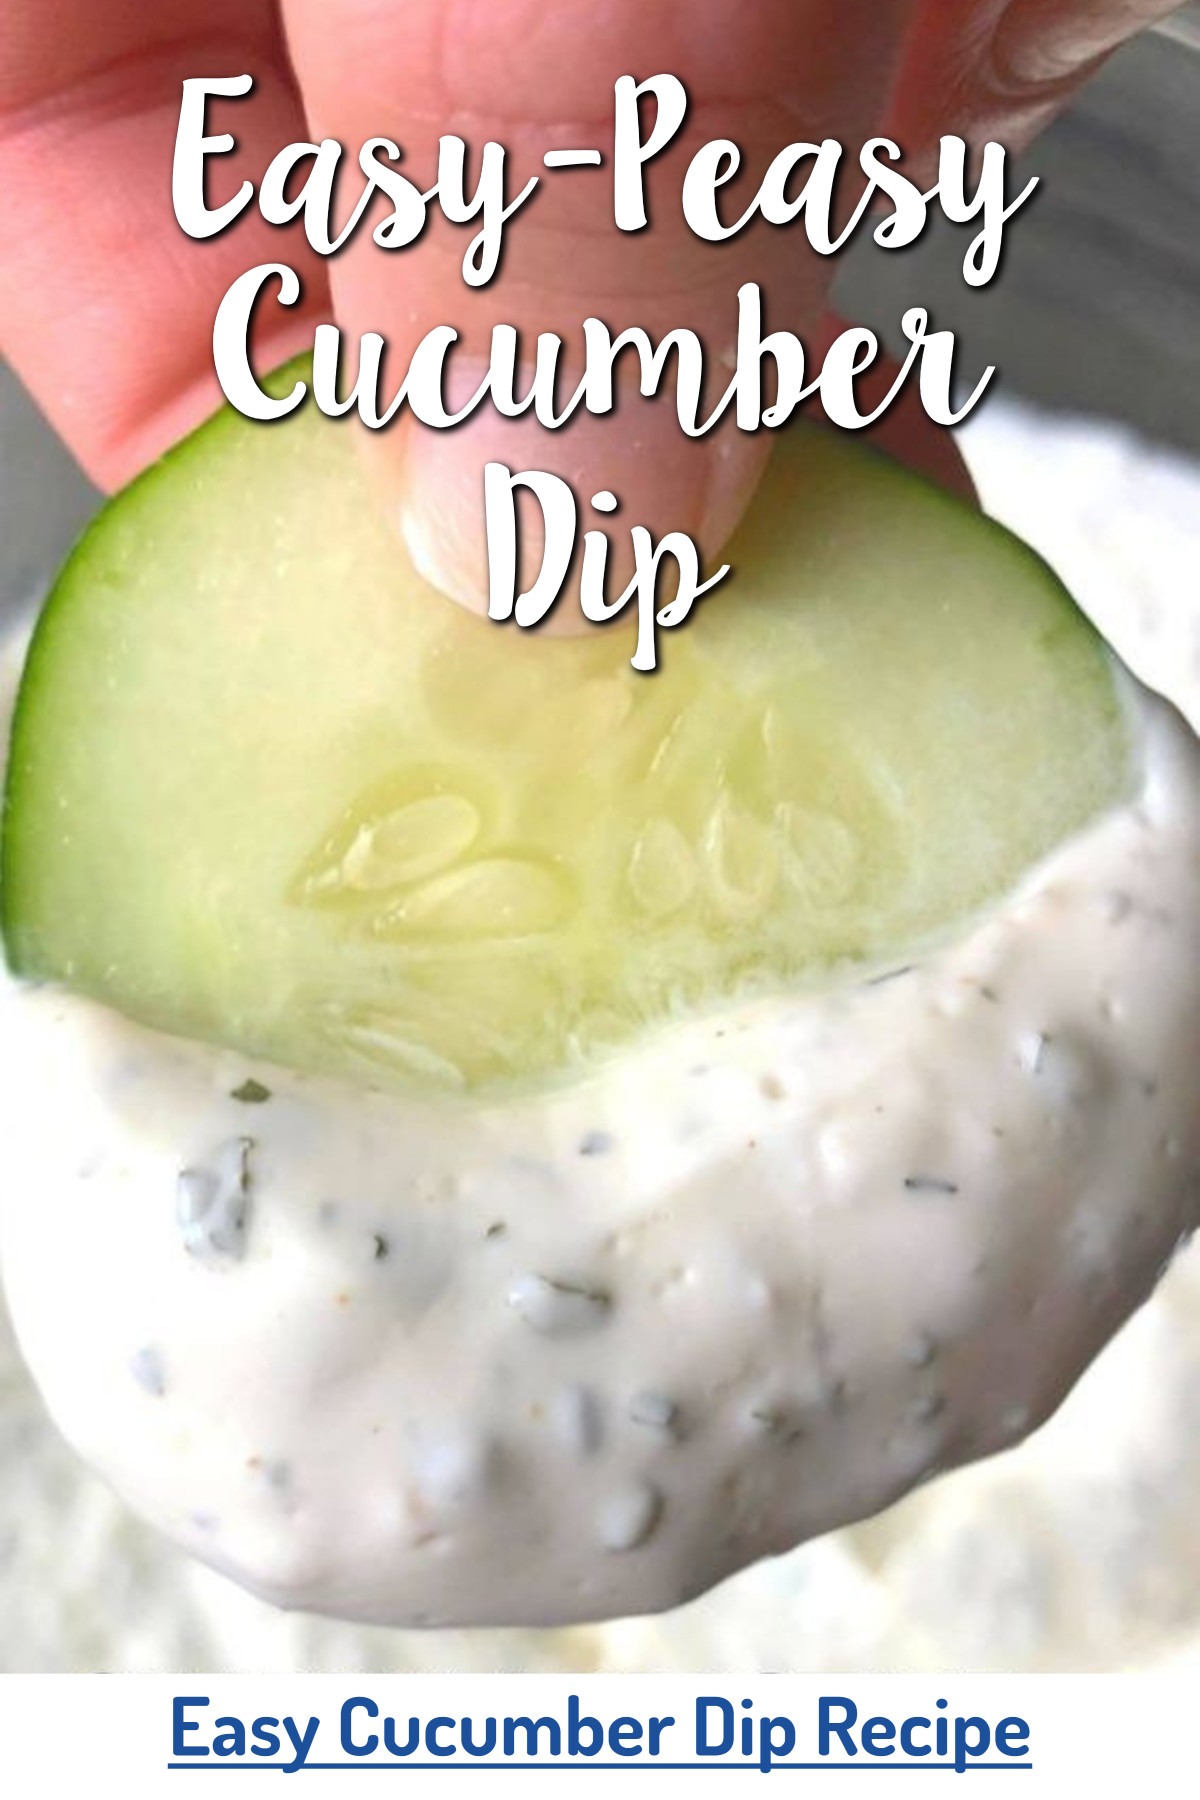 Easy Cucumber Dip Recipe